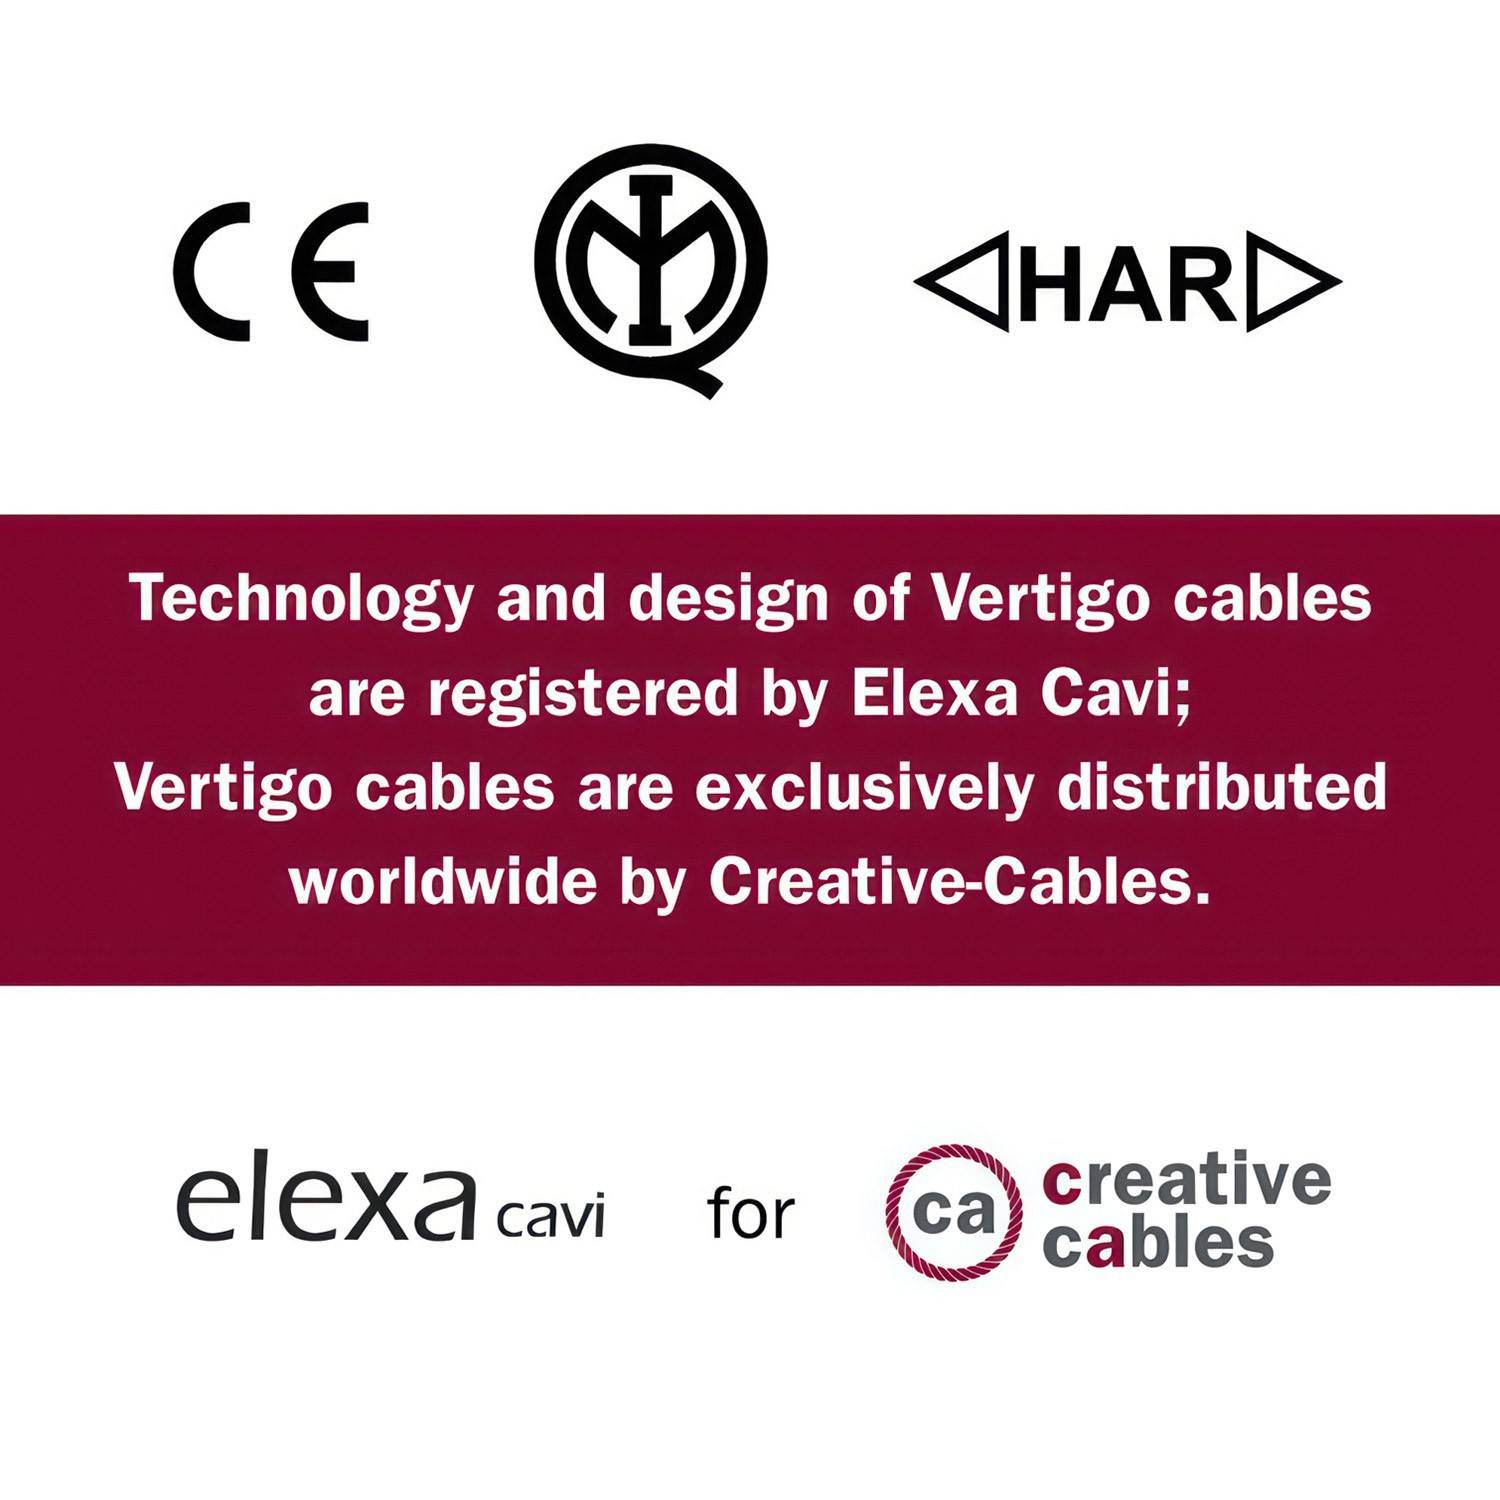 Glossy Paris Vertigo Textile Cable - The Original Creative-Cables - ERM57 round 2x0.75mm / 3x0.75mm